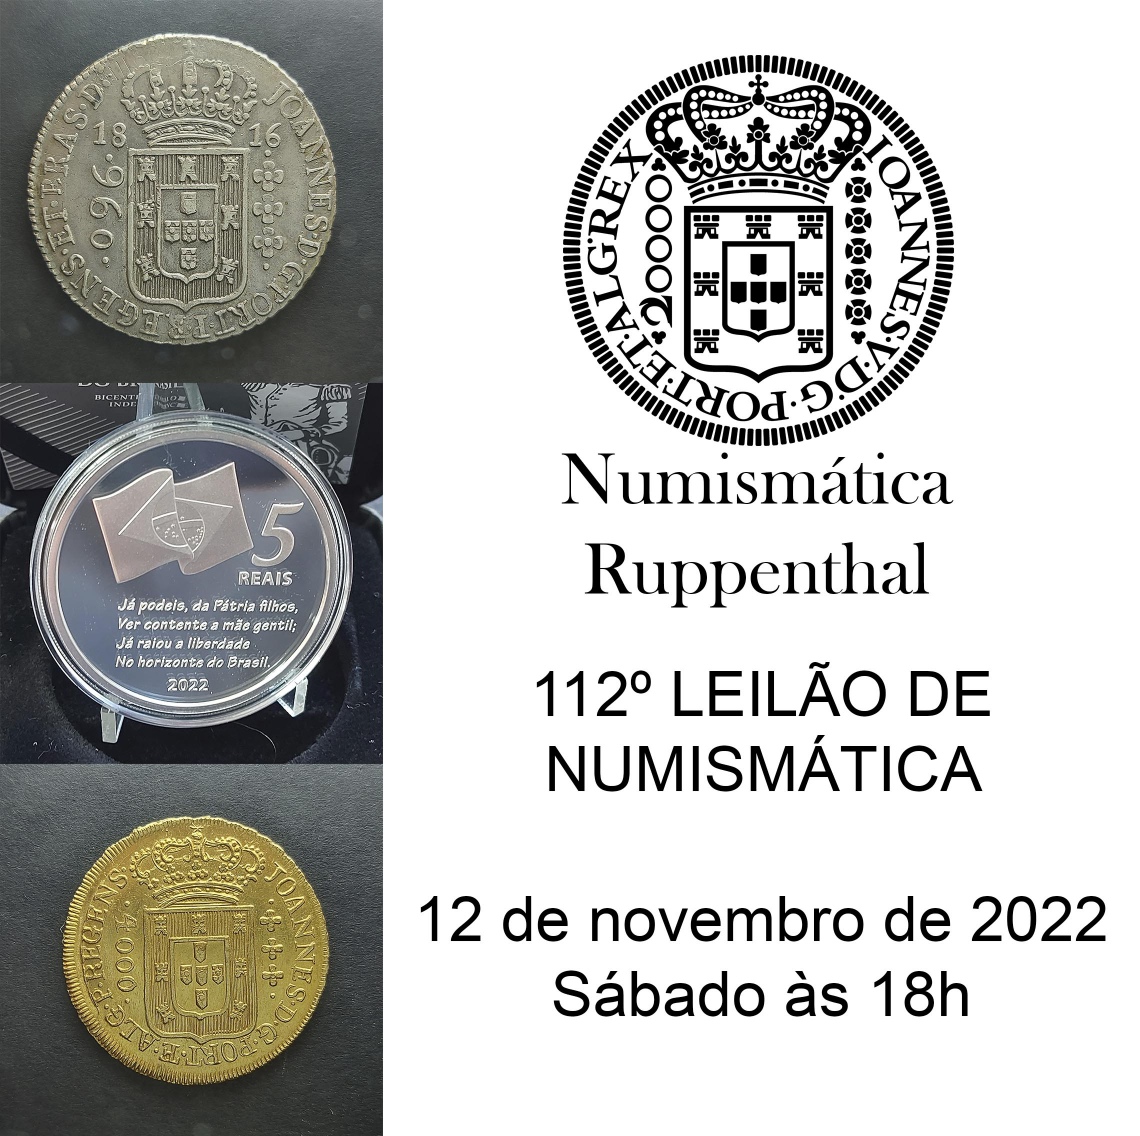 112º LEILÃO DE FILATELIA E NUMISMÁTICA - Numismática Ruppenthal